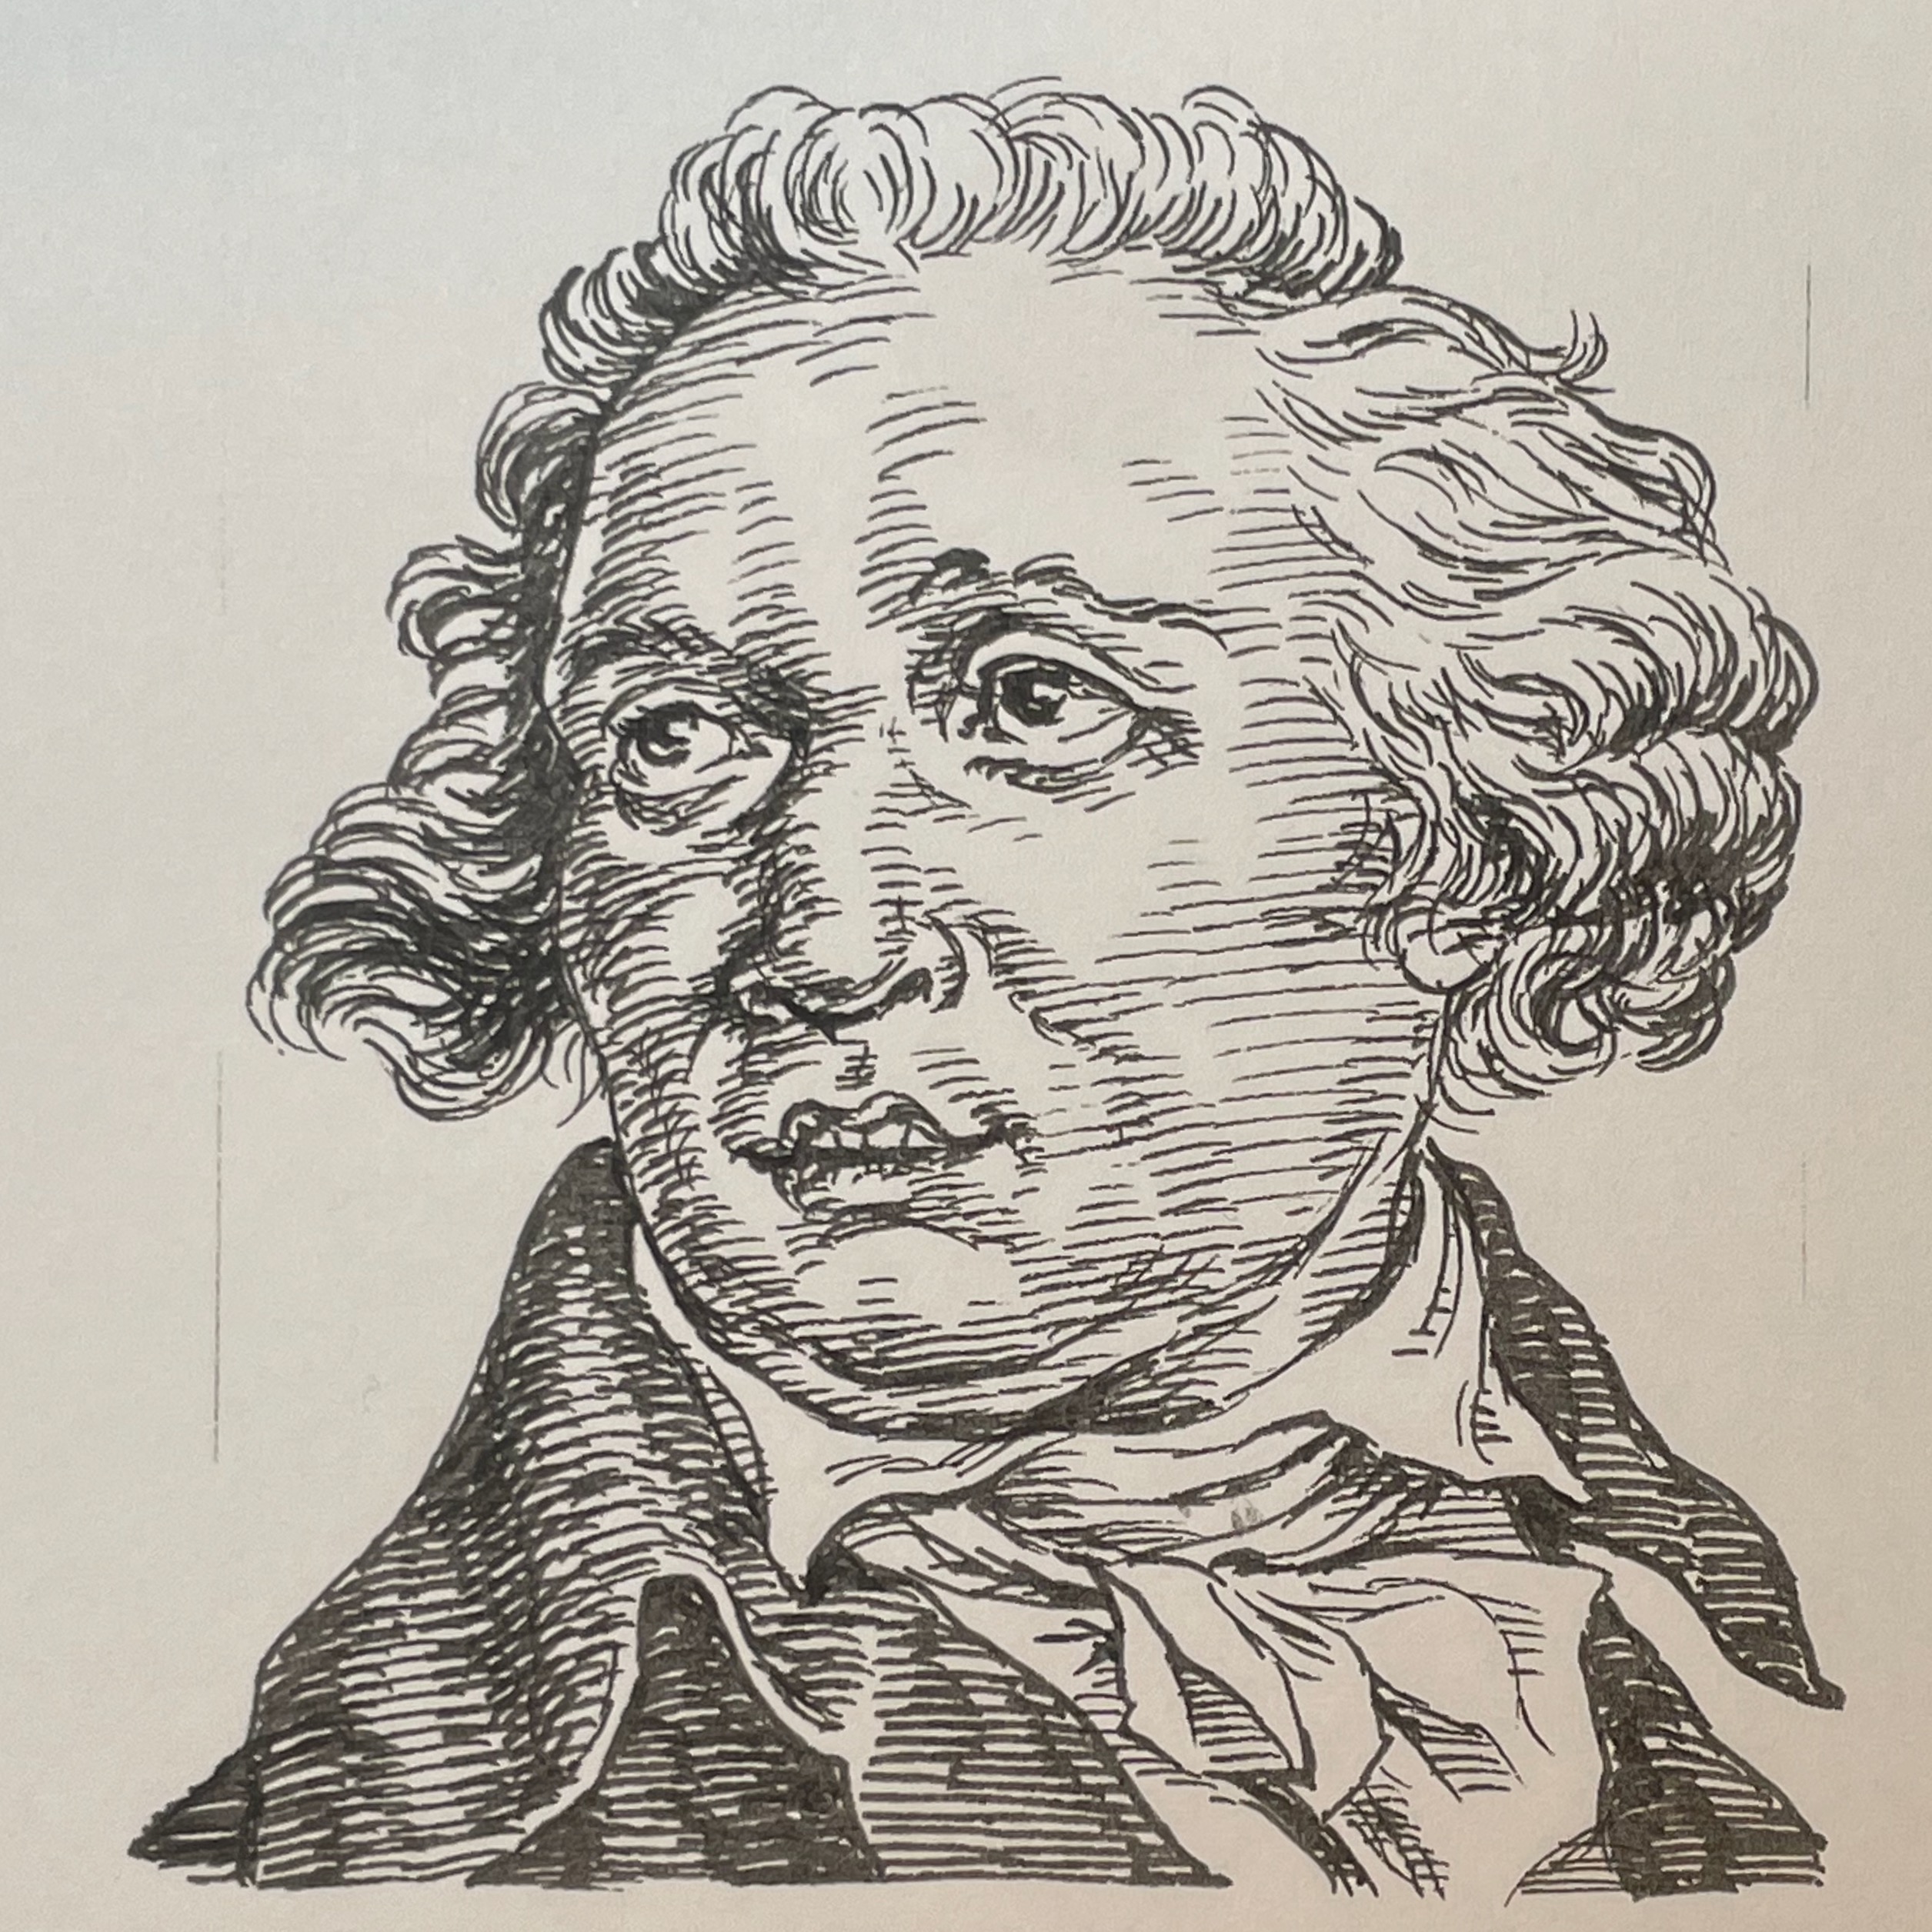 1740-1816を生きた作曲家。オペラ・ブッファの分野で活躍し、エカチェリーナ2世から招聘を受け約8年間ロシアで作曲活動を行う。その間に1782年Le barbier de Sévilleを作曲しペテルブルクで初演を飾る。帰国後、ナポレオン政治に翻弄された。生涯の作品は、オペラ80曲を超え、宗教曲やハープシコード協奏曲を含む器楽曲など多岐にわたった。